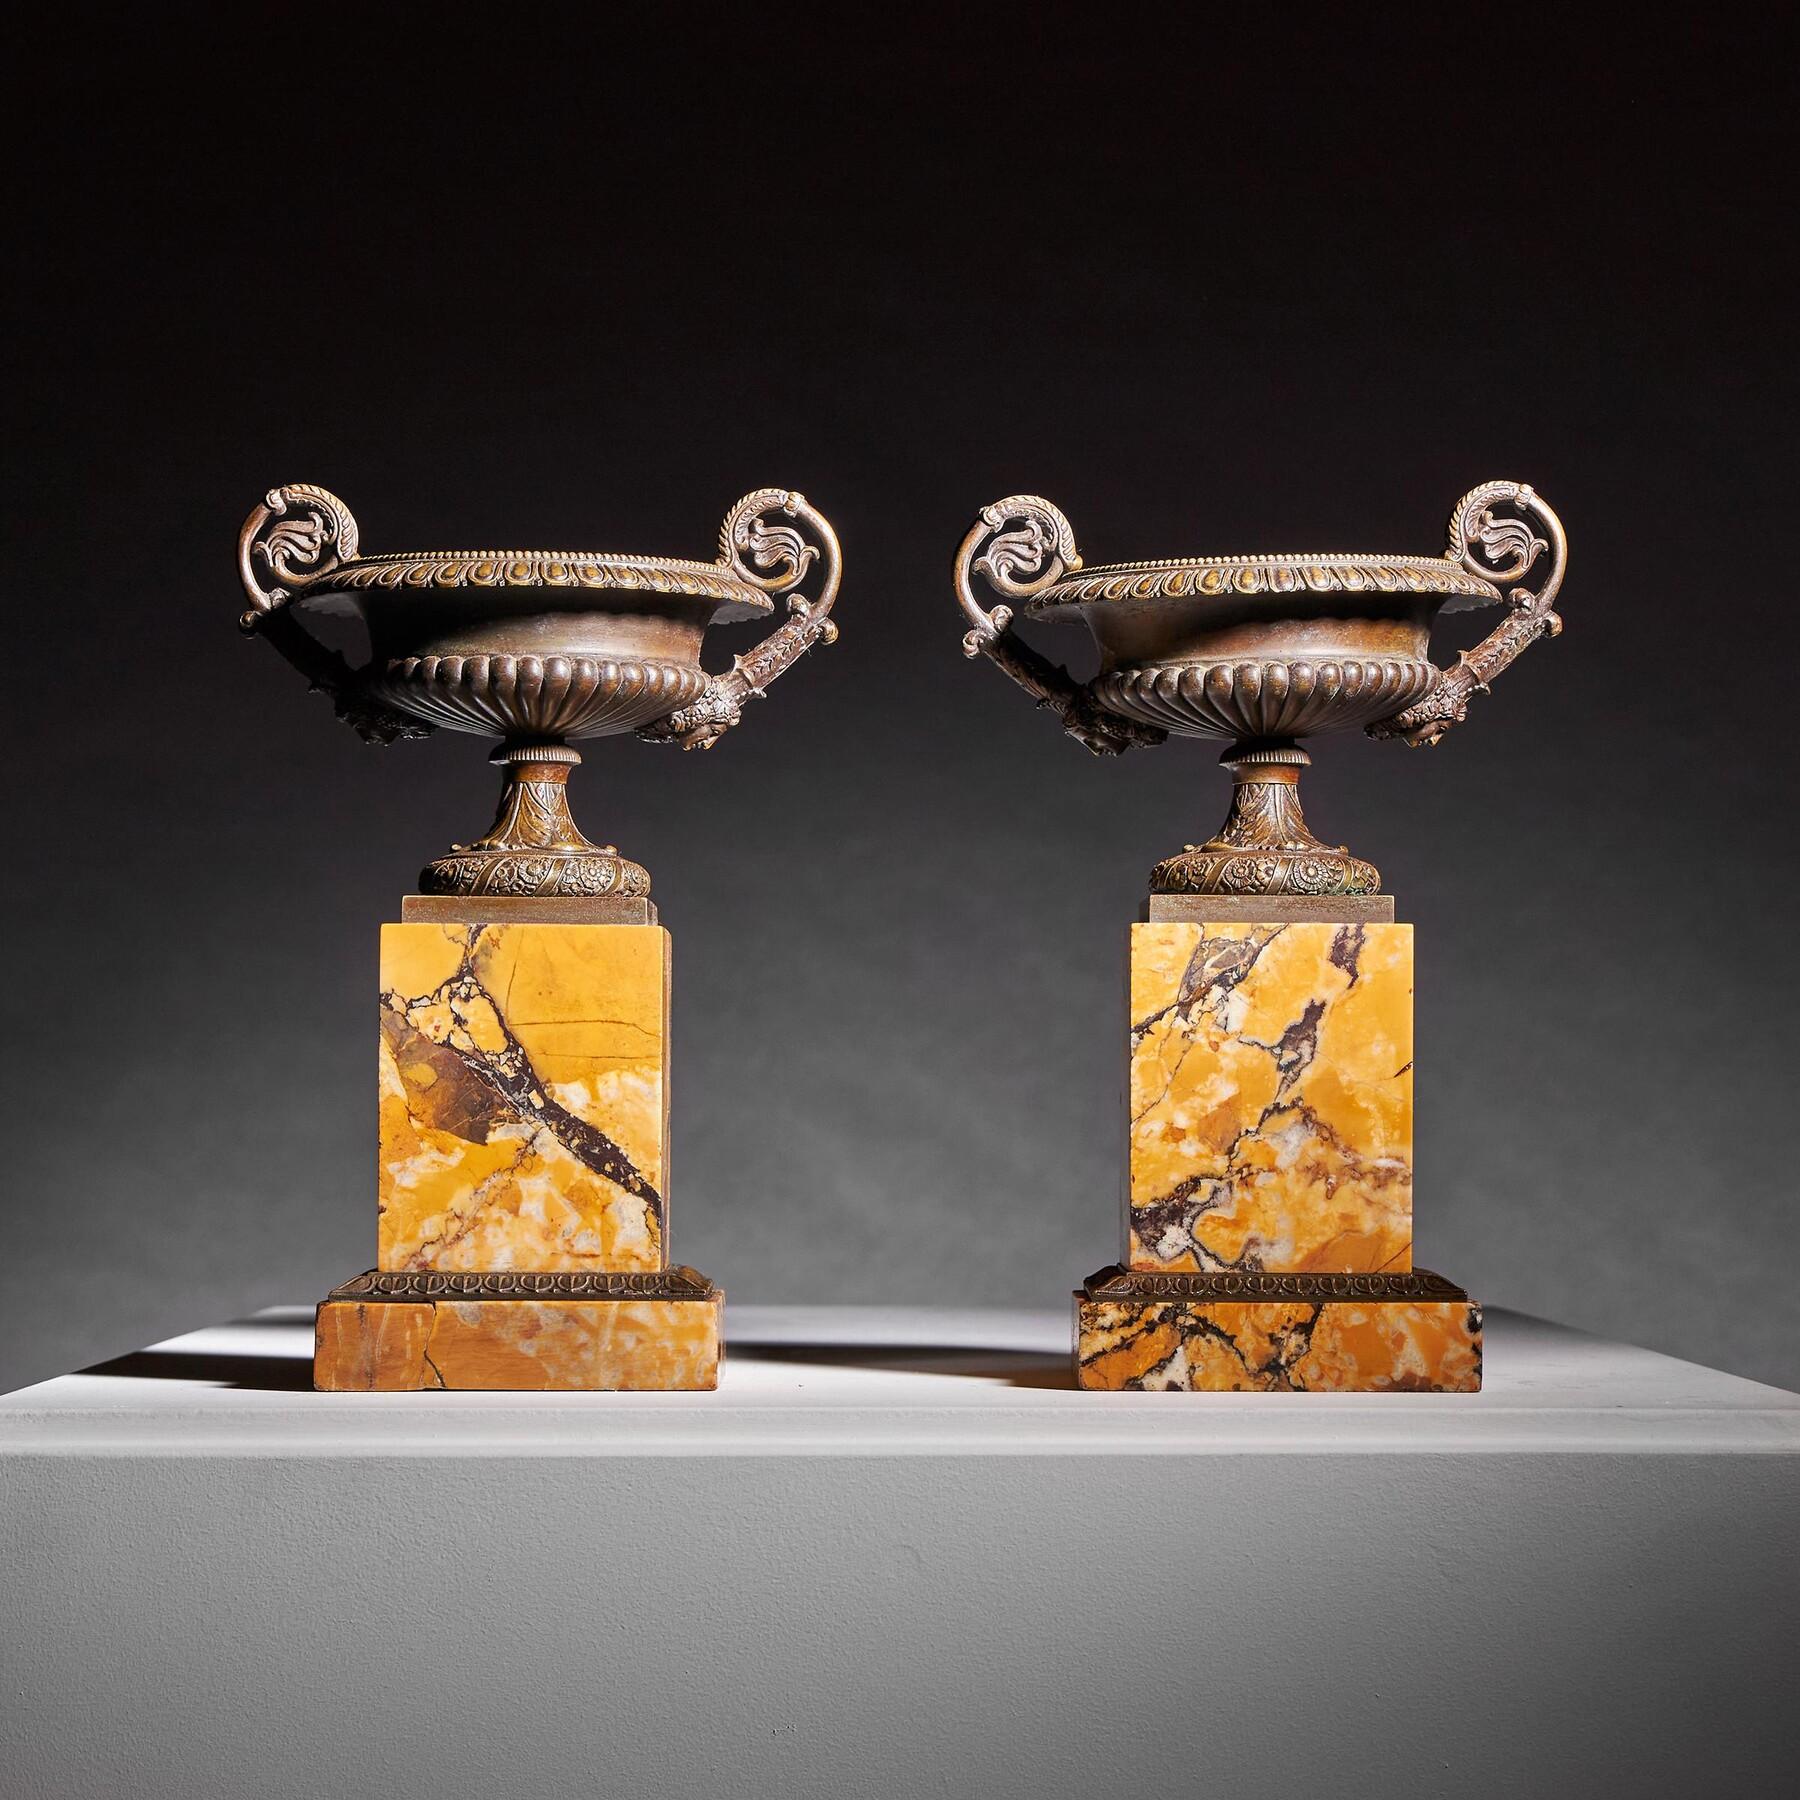 Ein Paar französischer Bronze- und Marmor-Tazzas des frühen 19. Jahrhunderts von besonders hoher Qualität und Größe

Französisch CIRCA 1820

Diese Tazzas sind unglaublich fein detailliert und durchweg von bester Qualität. Die Sockel der Tazzas